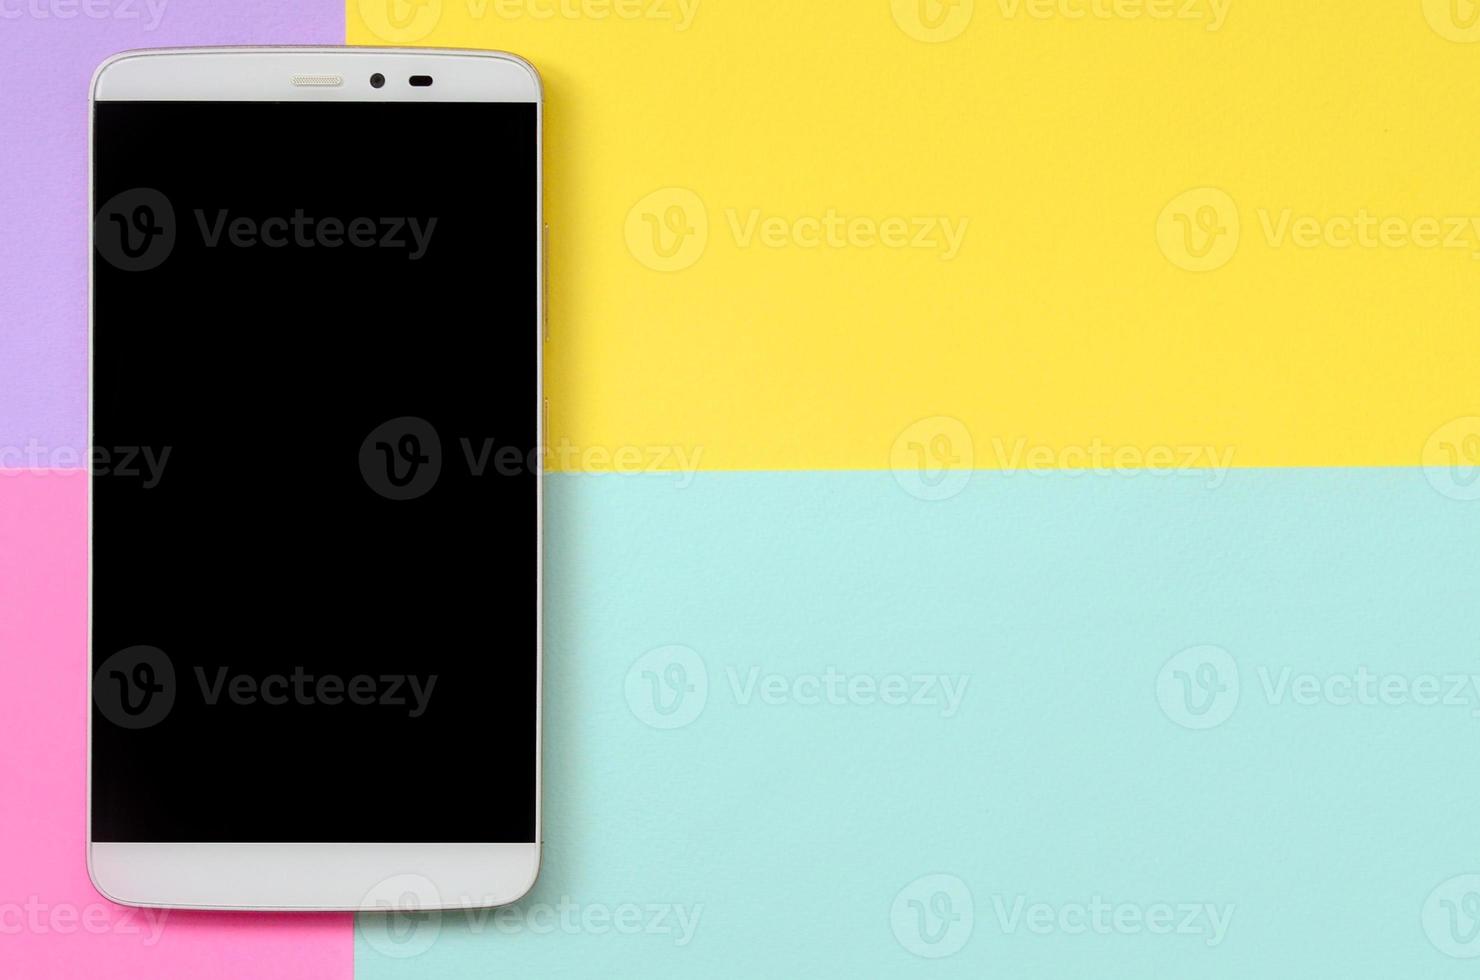 smartphone moderno com tela preta no fundo de textura de papel de cores pastel de moda azul, amarelo, violeta e rosa em conceito mínimo foto